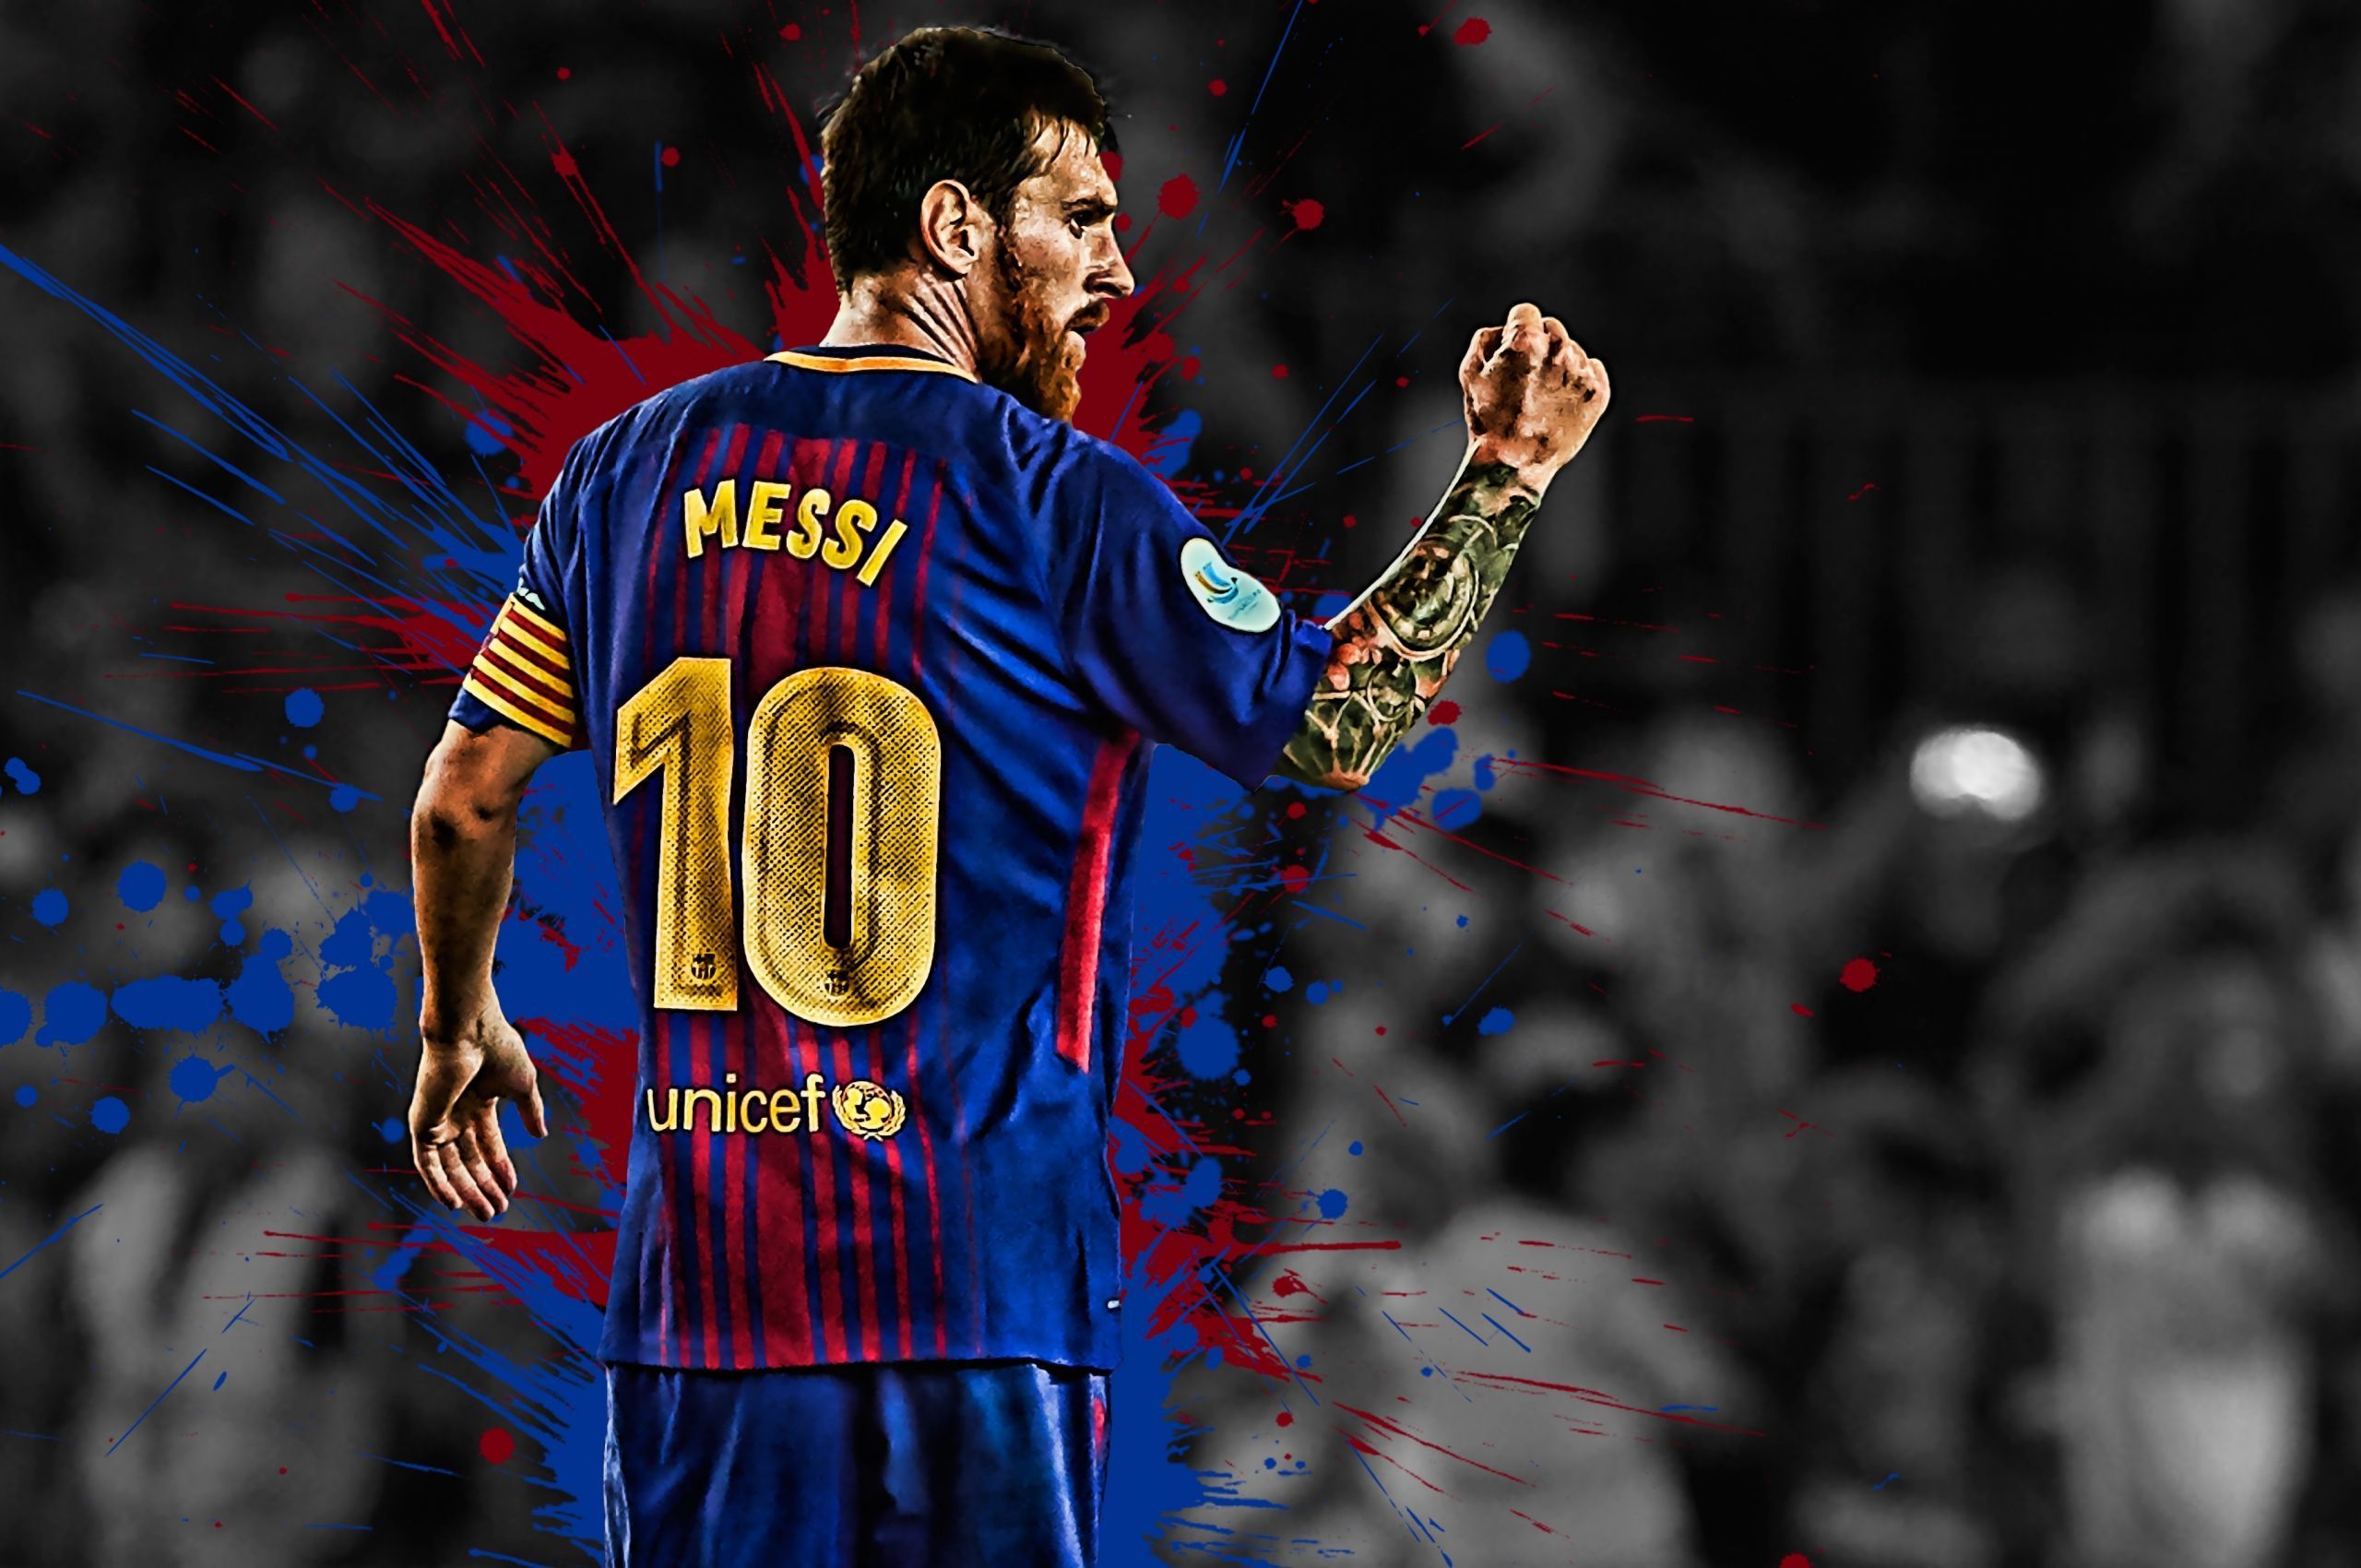 Tải ngay bộ sưu tập PC Messi 2021 Wallpapers mới nhất và cập nhật những hình nền đáng yêu, tươi mới và đầy năng lượng của Messi. Khám phá và tận hưởng không gian máy tính độc đáo cùng chân dung Messi đầy cuốn hút.